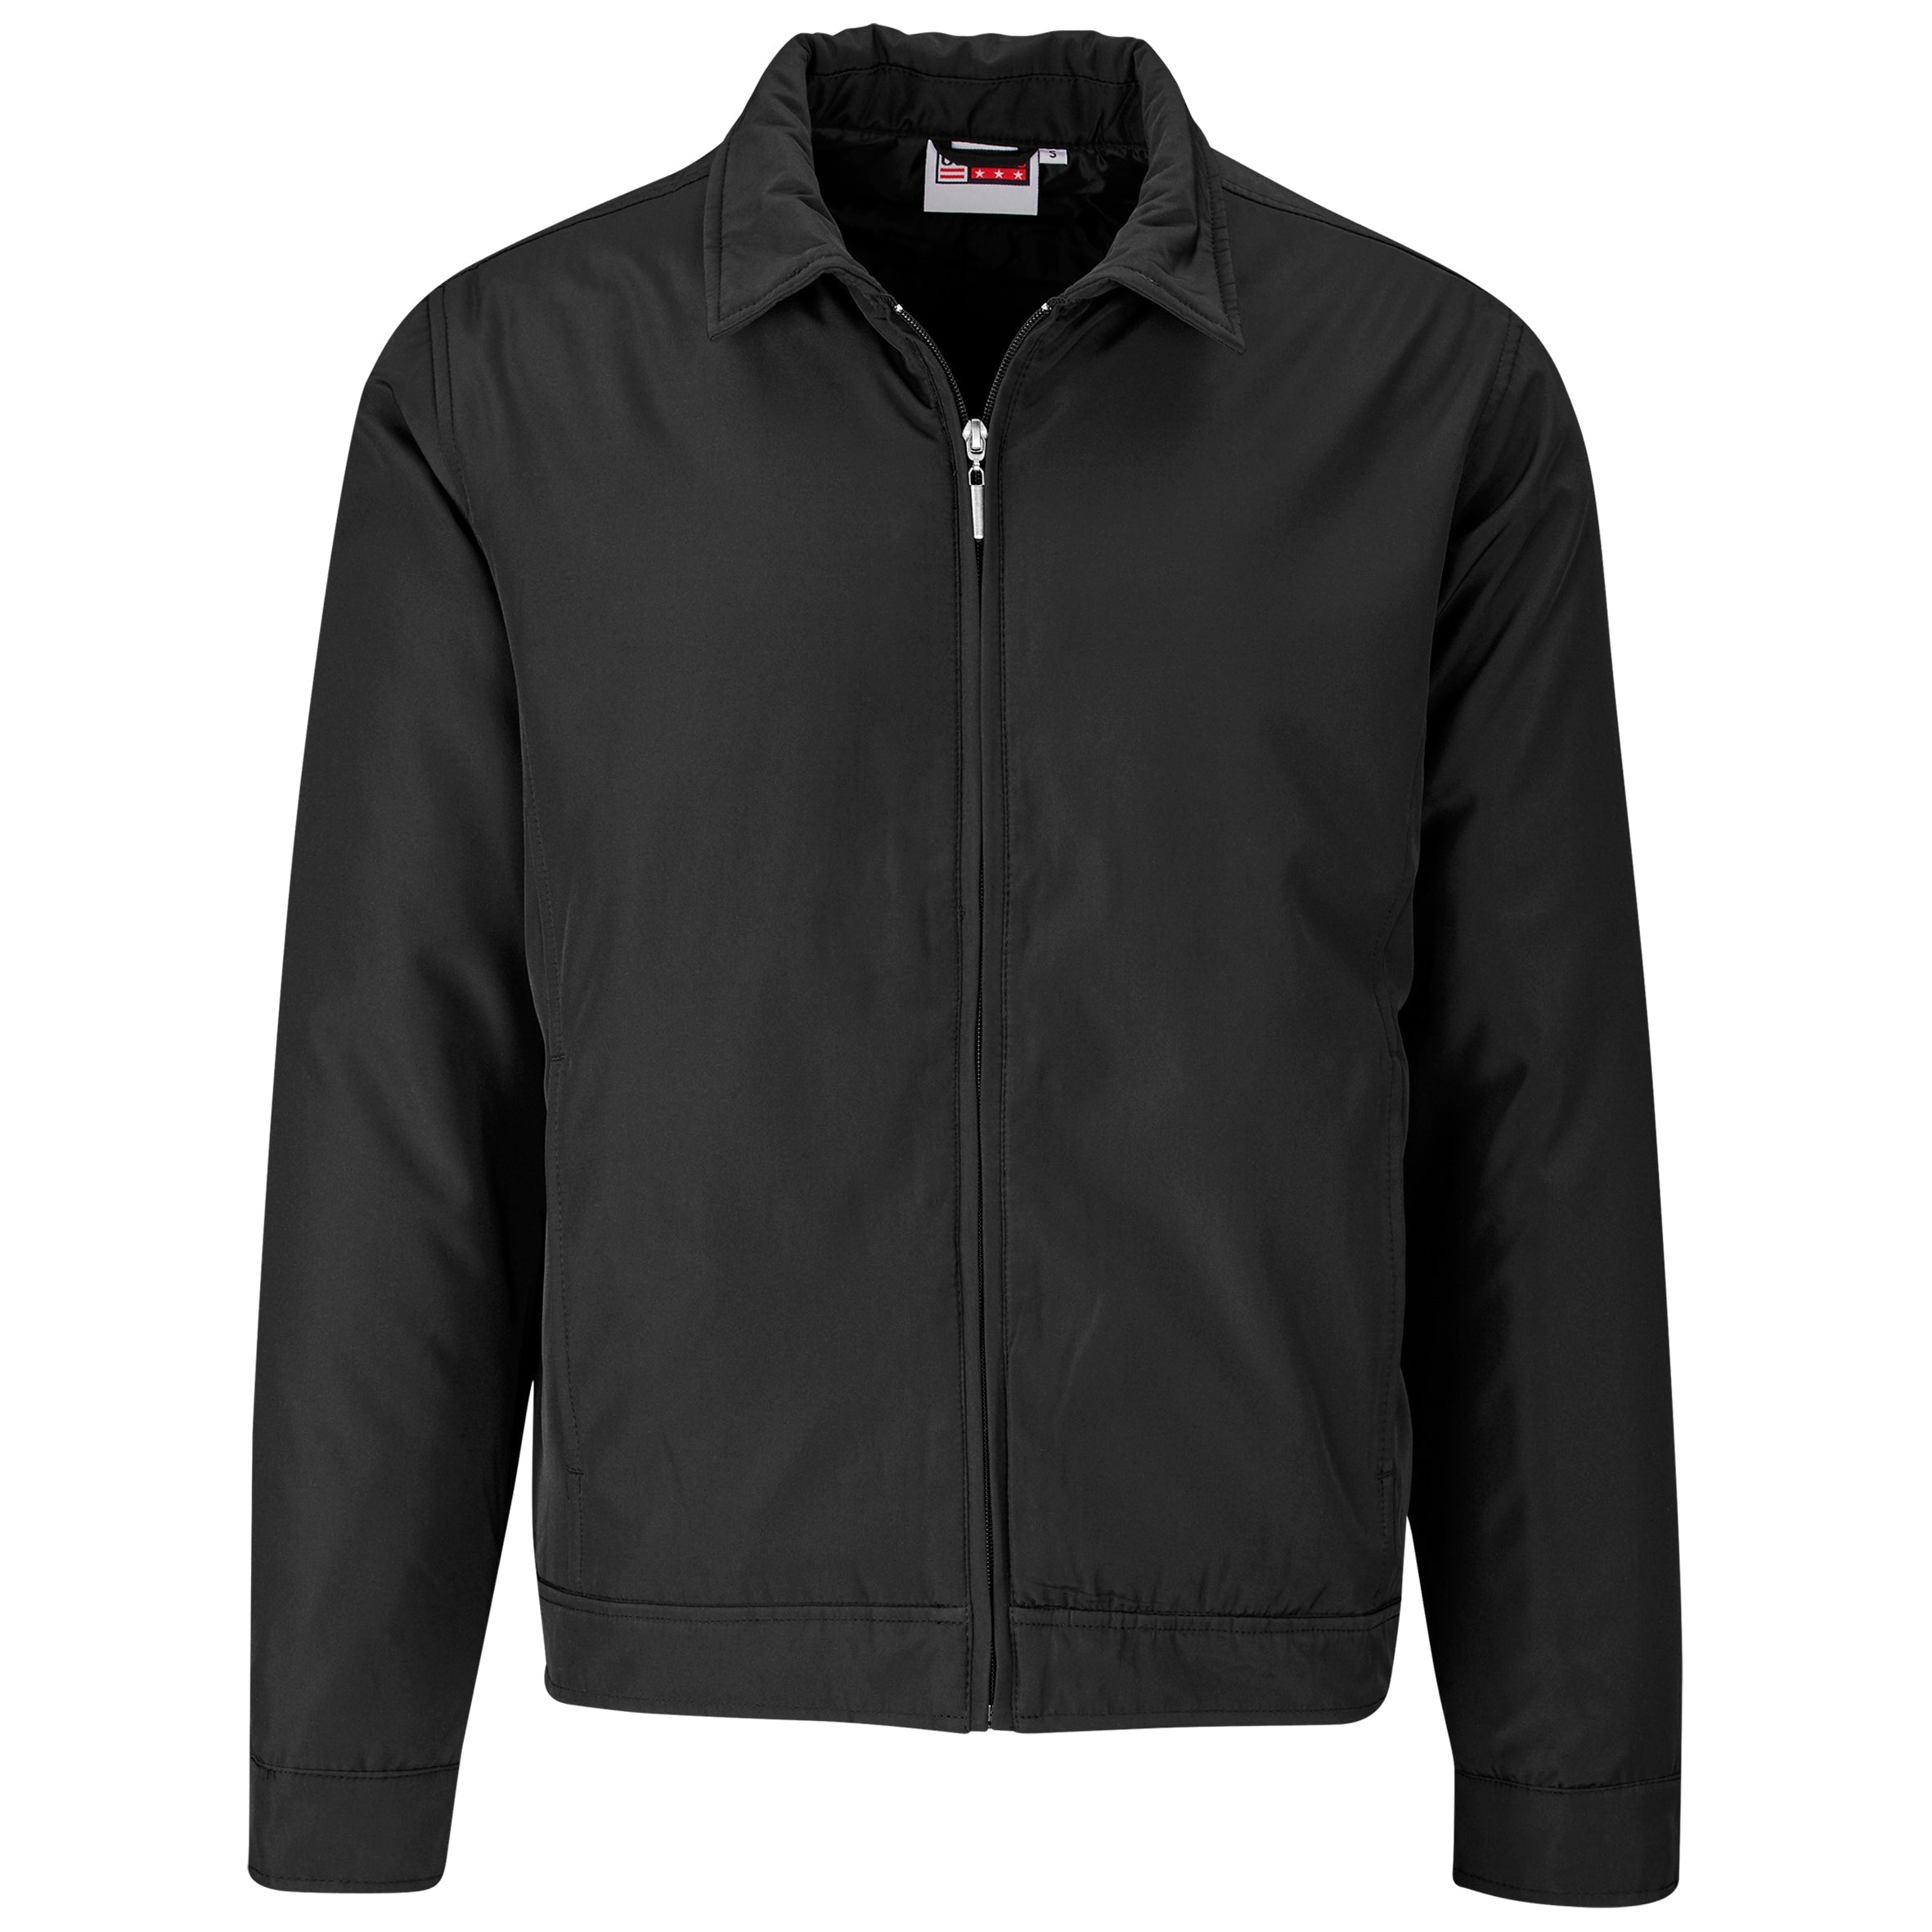 Mens Benton Executive Jacket - Black Only-Coats & Jackets-2XL-Black-BL